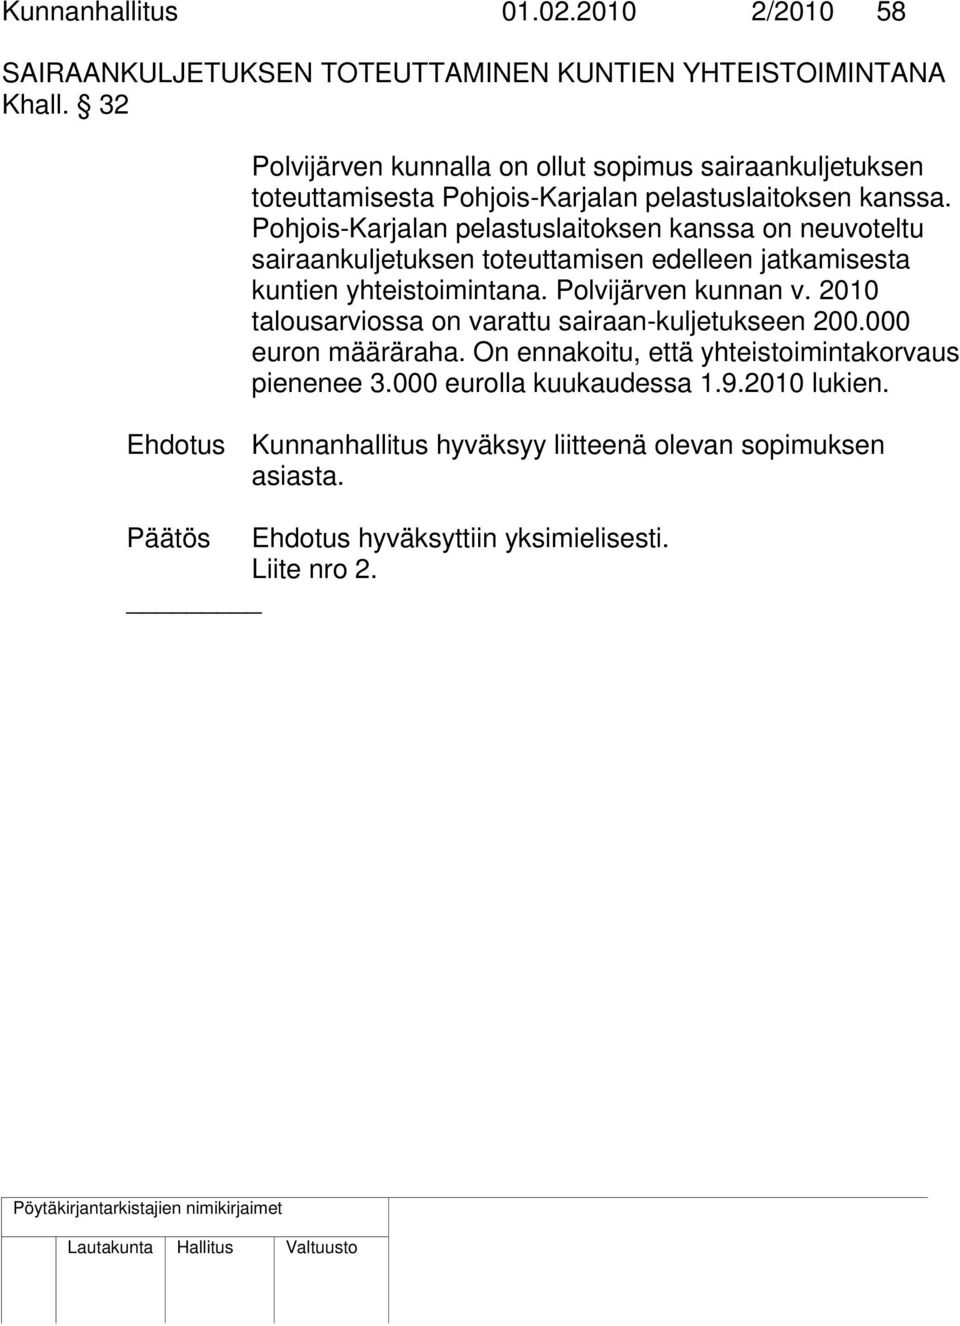 Pohjois-Karjalan pelastuslaitoksen kanssa on neuvoteltu sairaankuljetuksen toteuttamisen edelleen jatkamisesta kuntien yhteistoimintana. Polvijärven kunnan v.